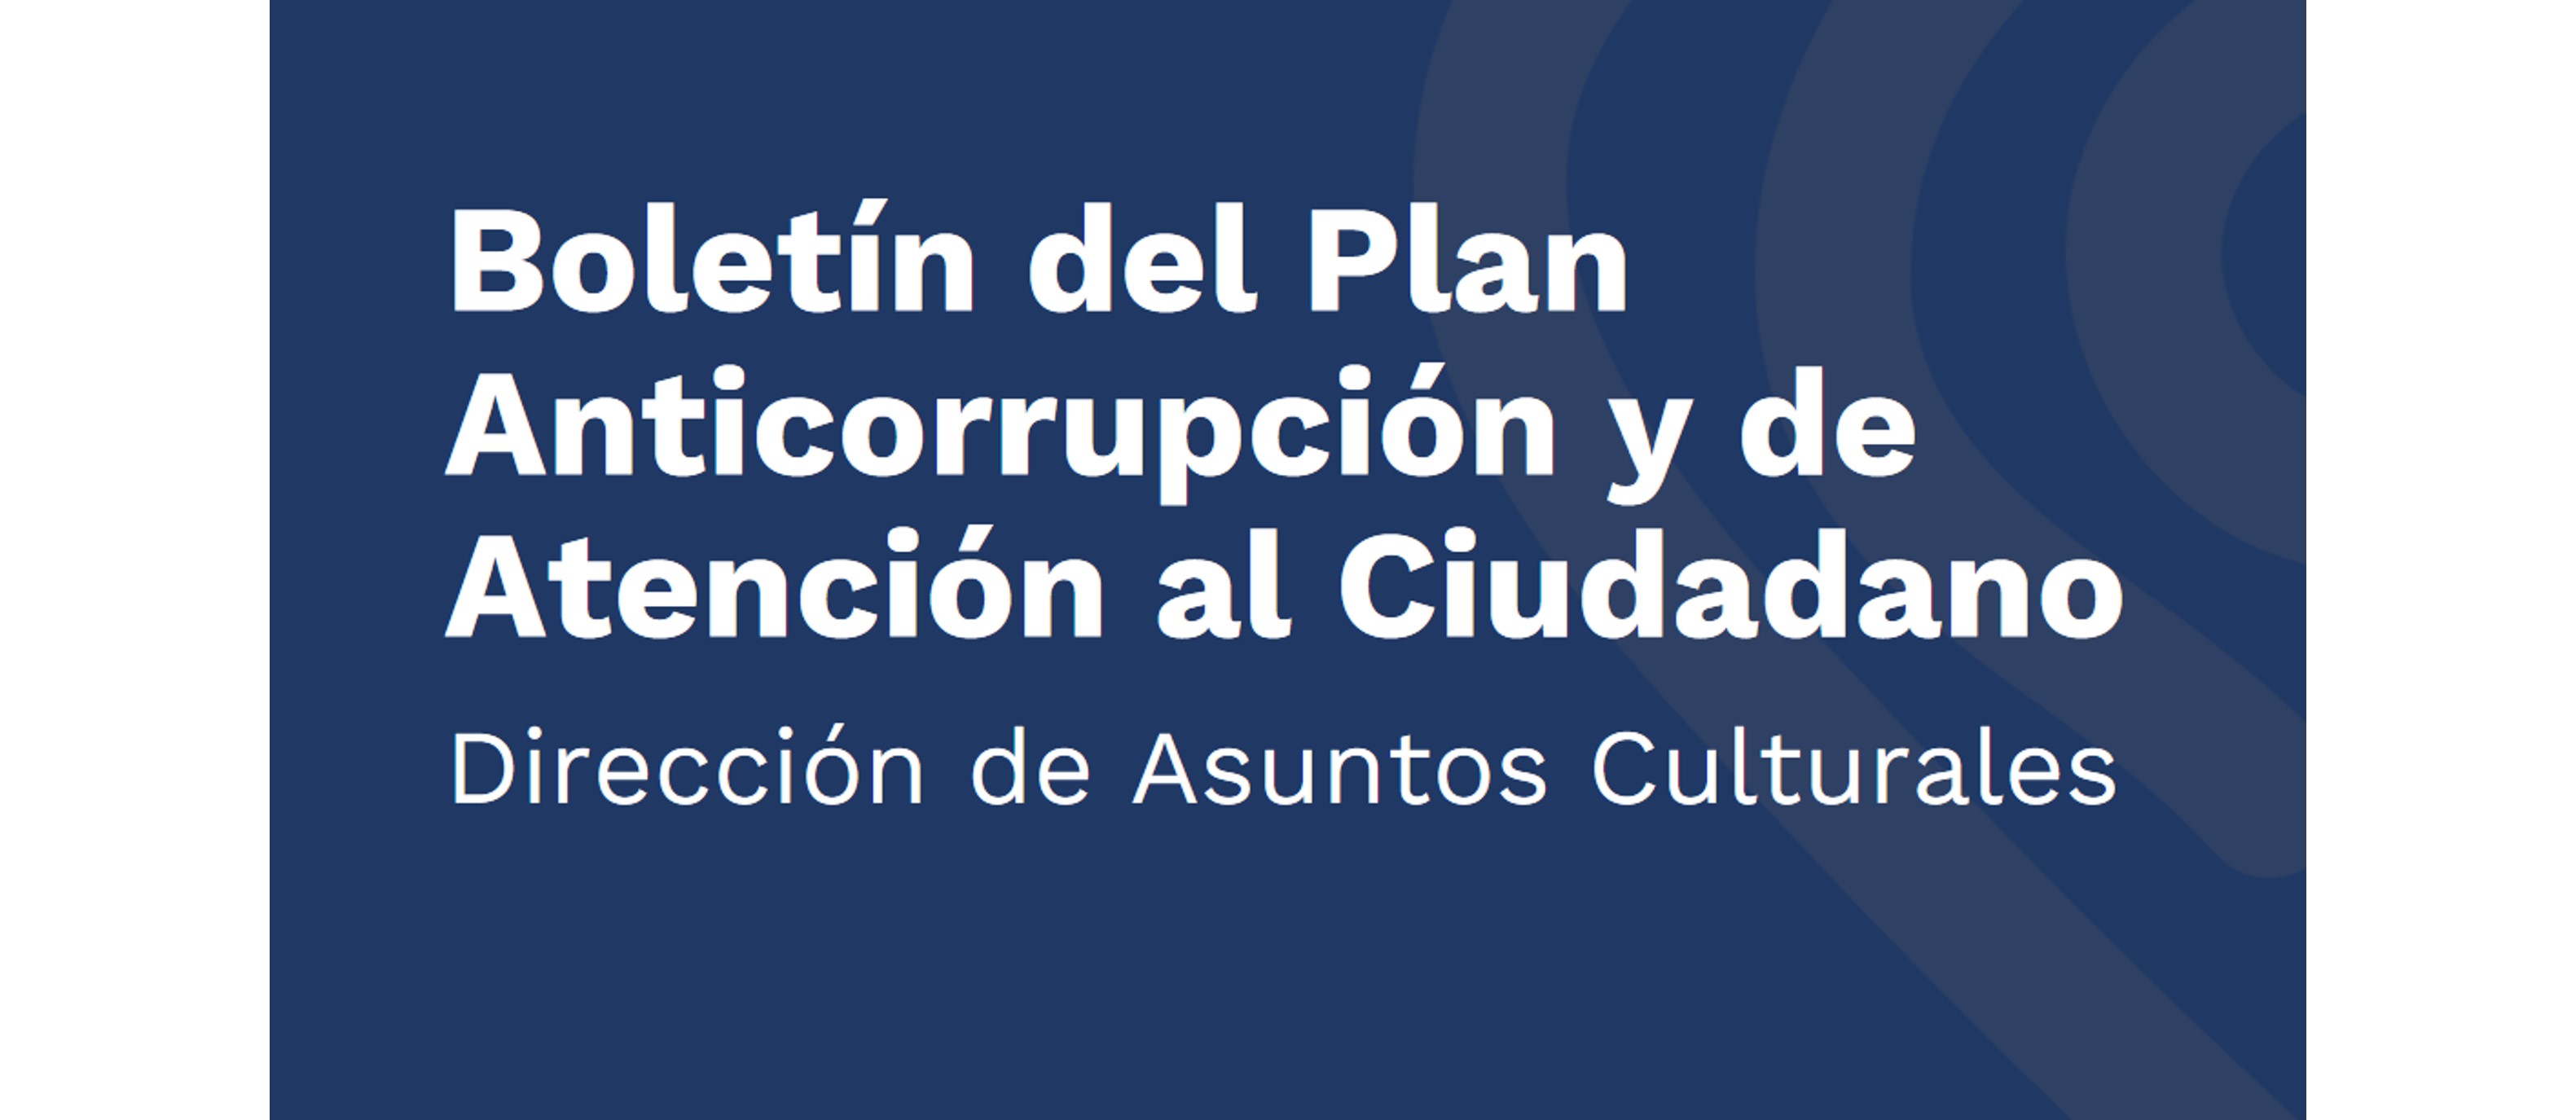 Boletín del Plan Anticorrupción y de Atención al Ciudadano de la Dirección de Asuntos Culturales